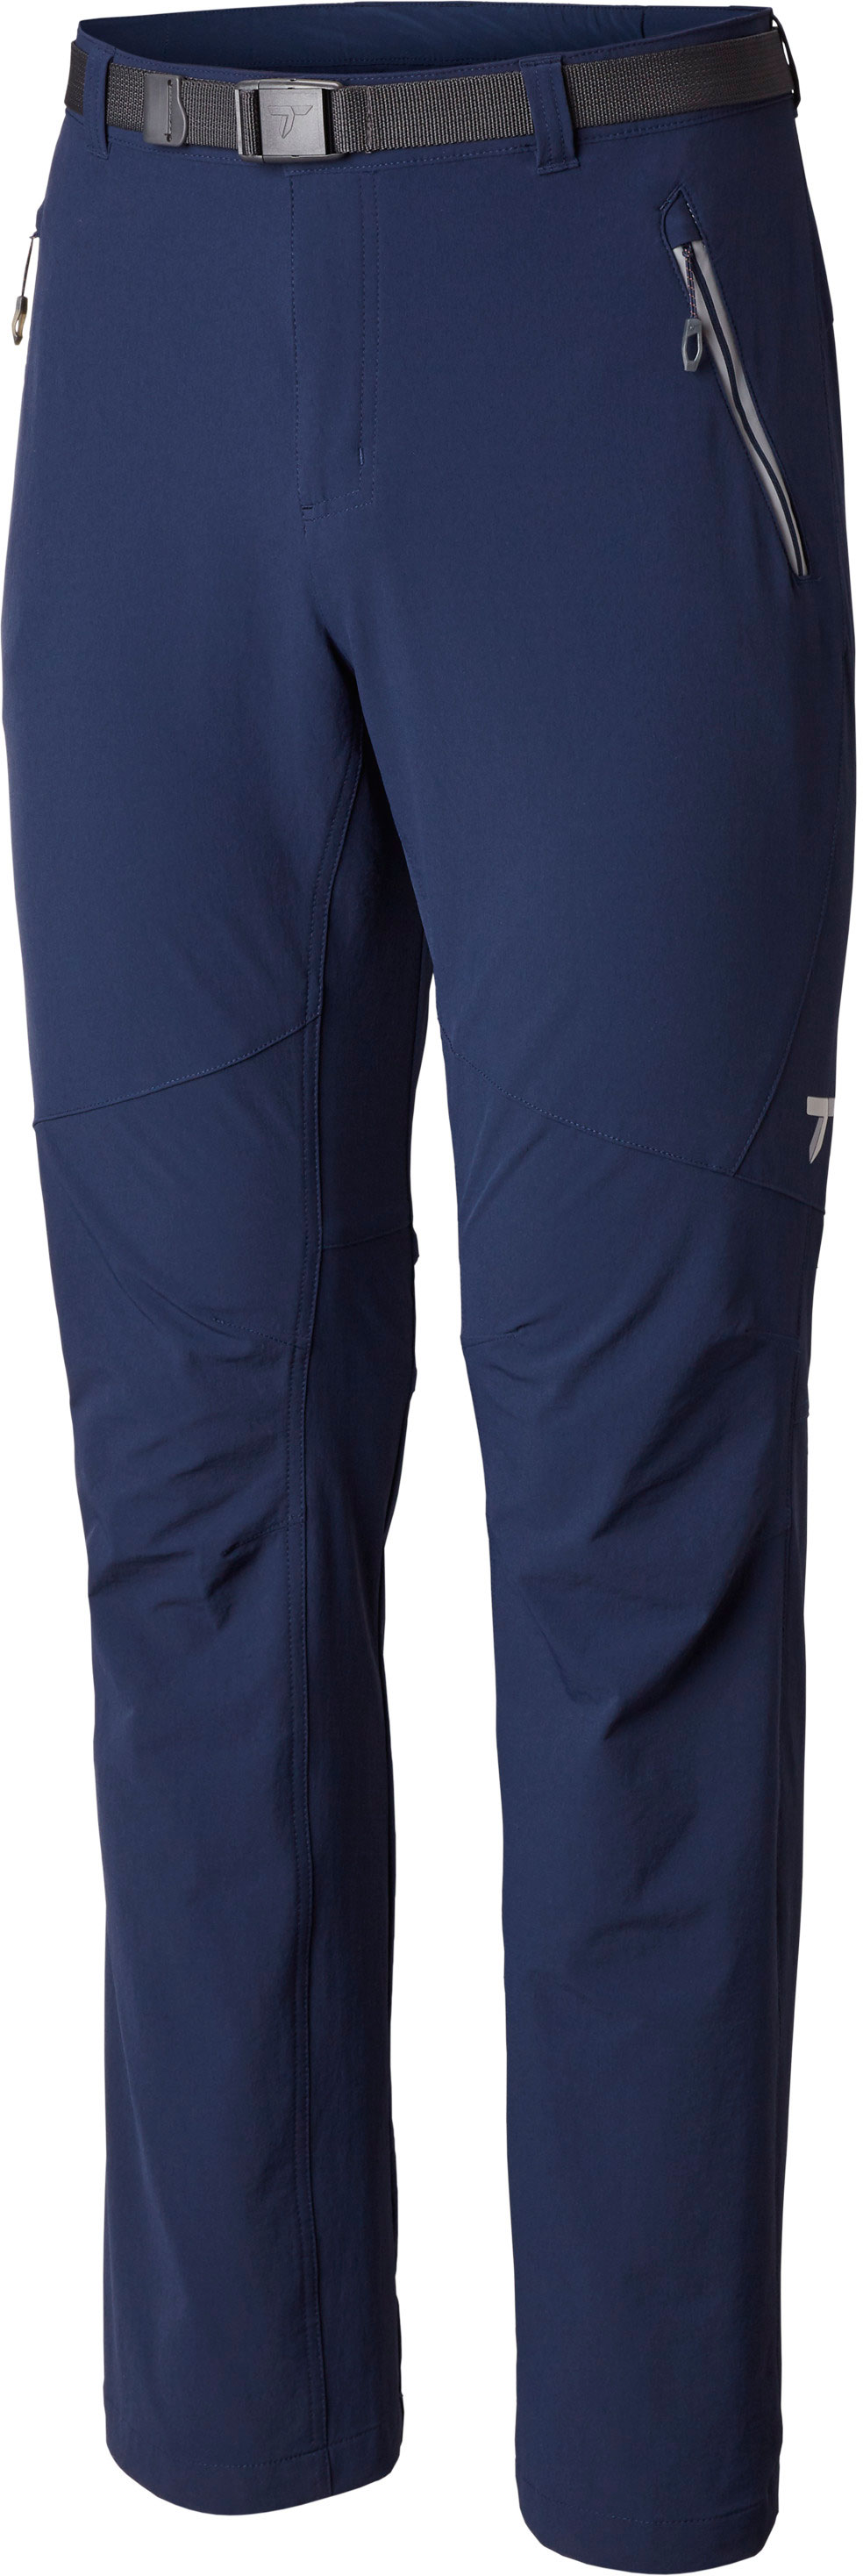 COLUMBIA TITANIUM CARGO Shorts Men's Size Medium Beige/cream  Outdoors/hiking £9.99 - PicClick UK